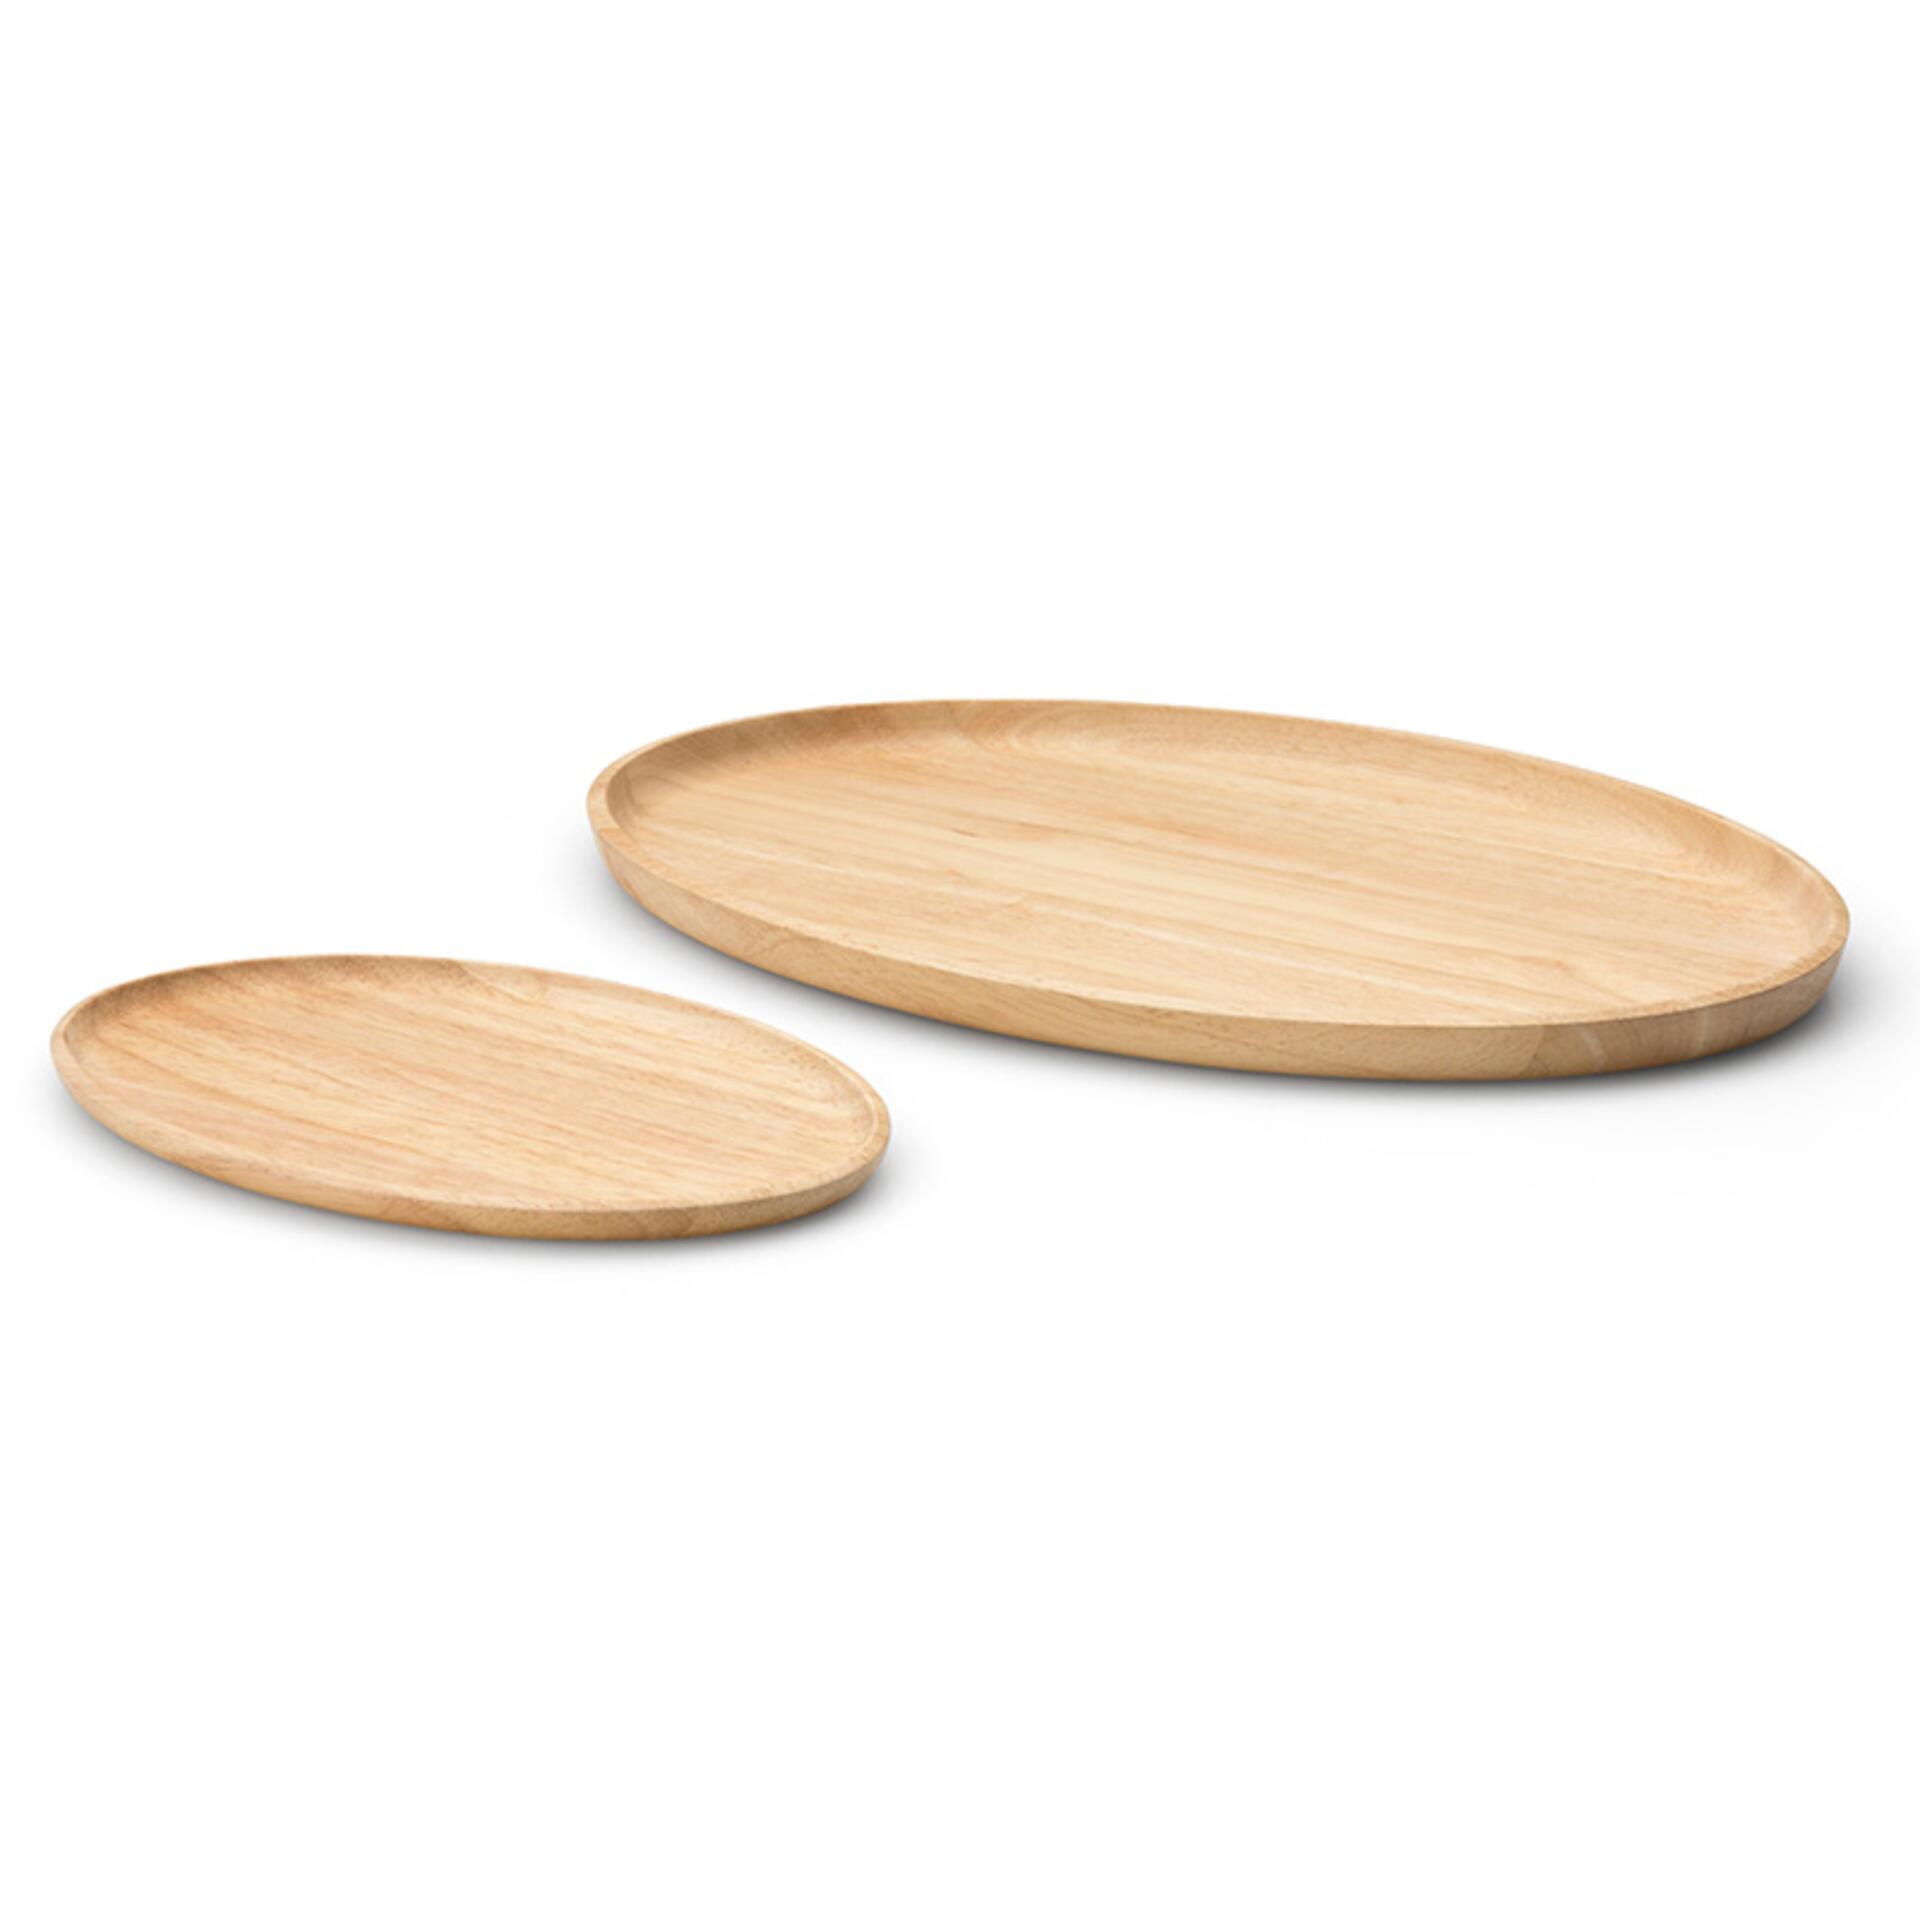 Continenta Tablett oval Holz 23,5 x 15,5 x 1,2 cm